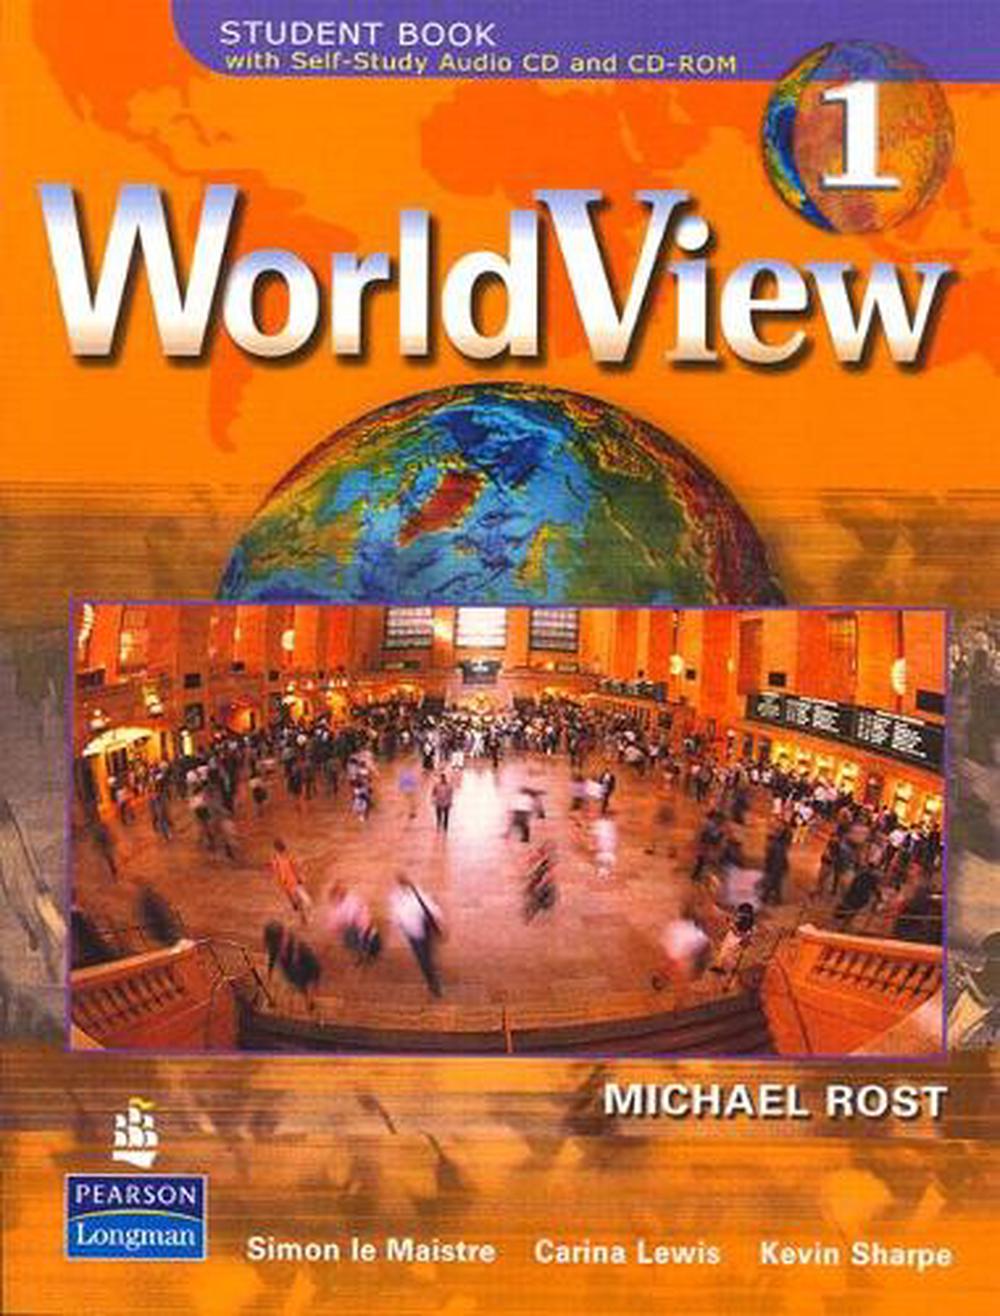 Wider world учебник. Wider World 2 teacher's book с диском самый дешевый. Metro student's book. Wonderful World 1. Workbook. A book about Worldview.